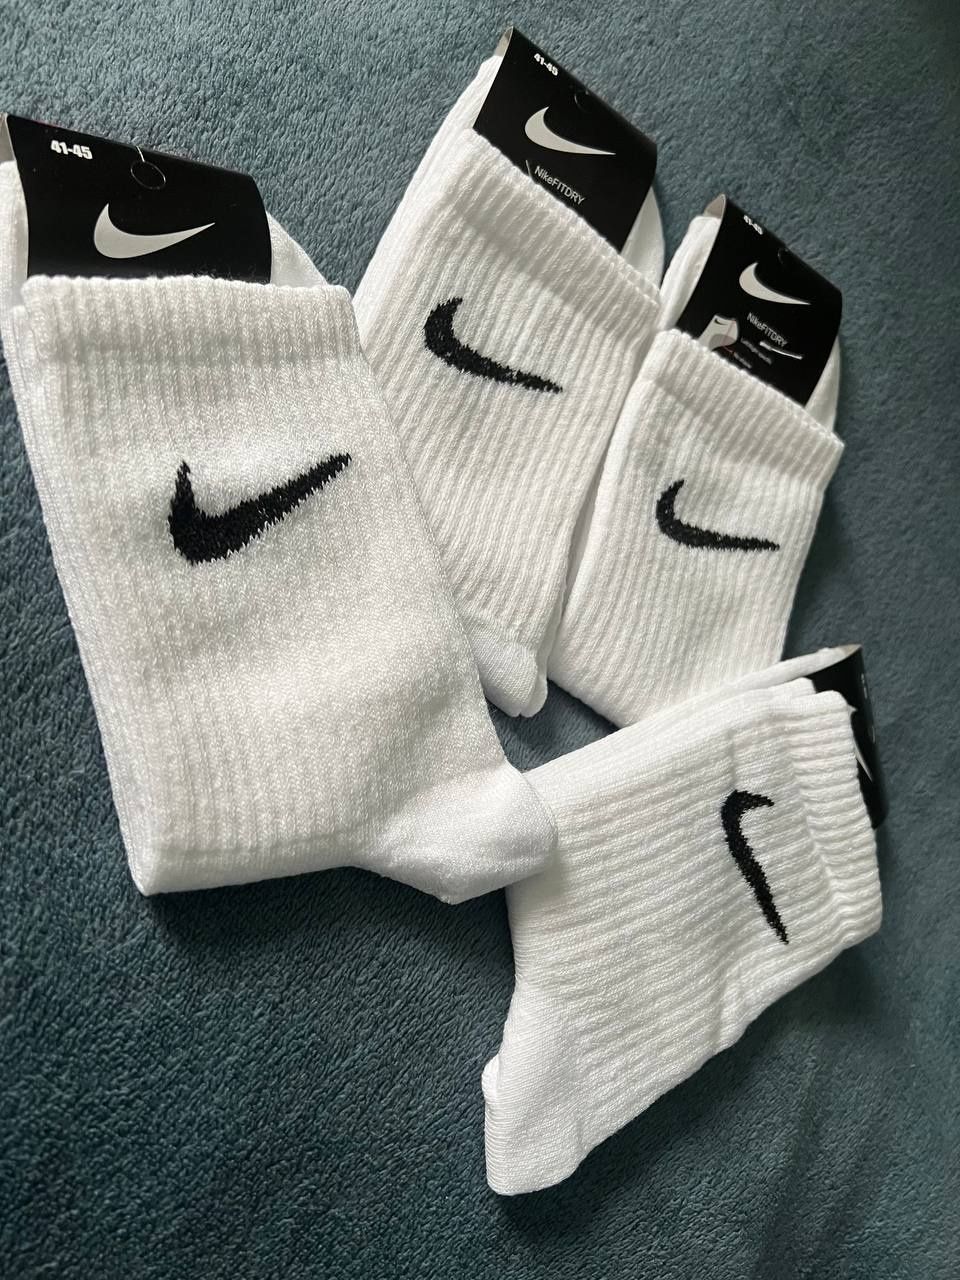 Skarpetki Nike, białe